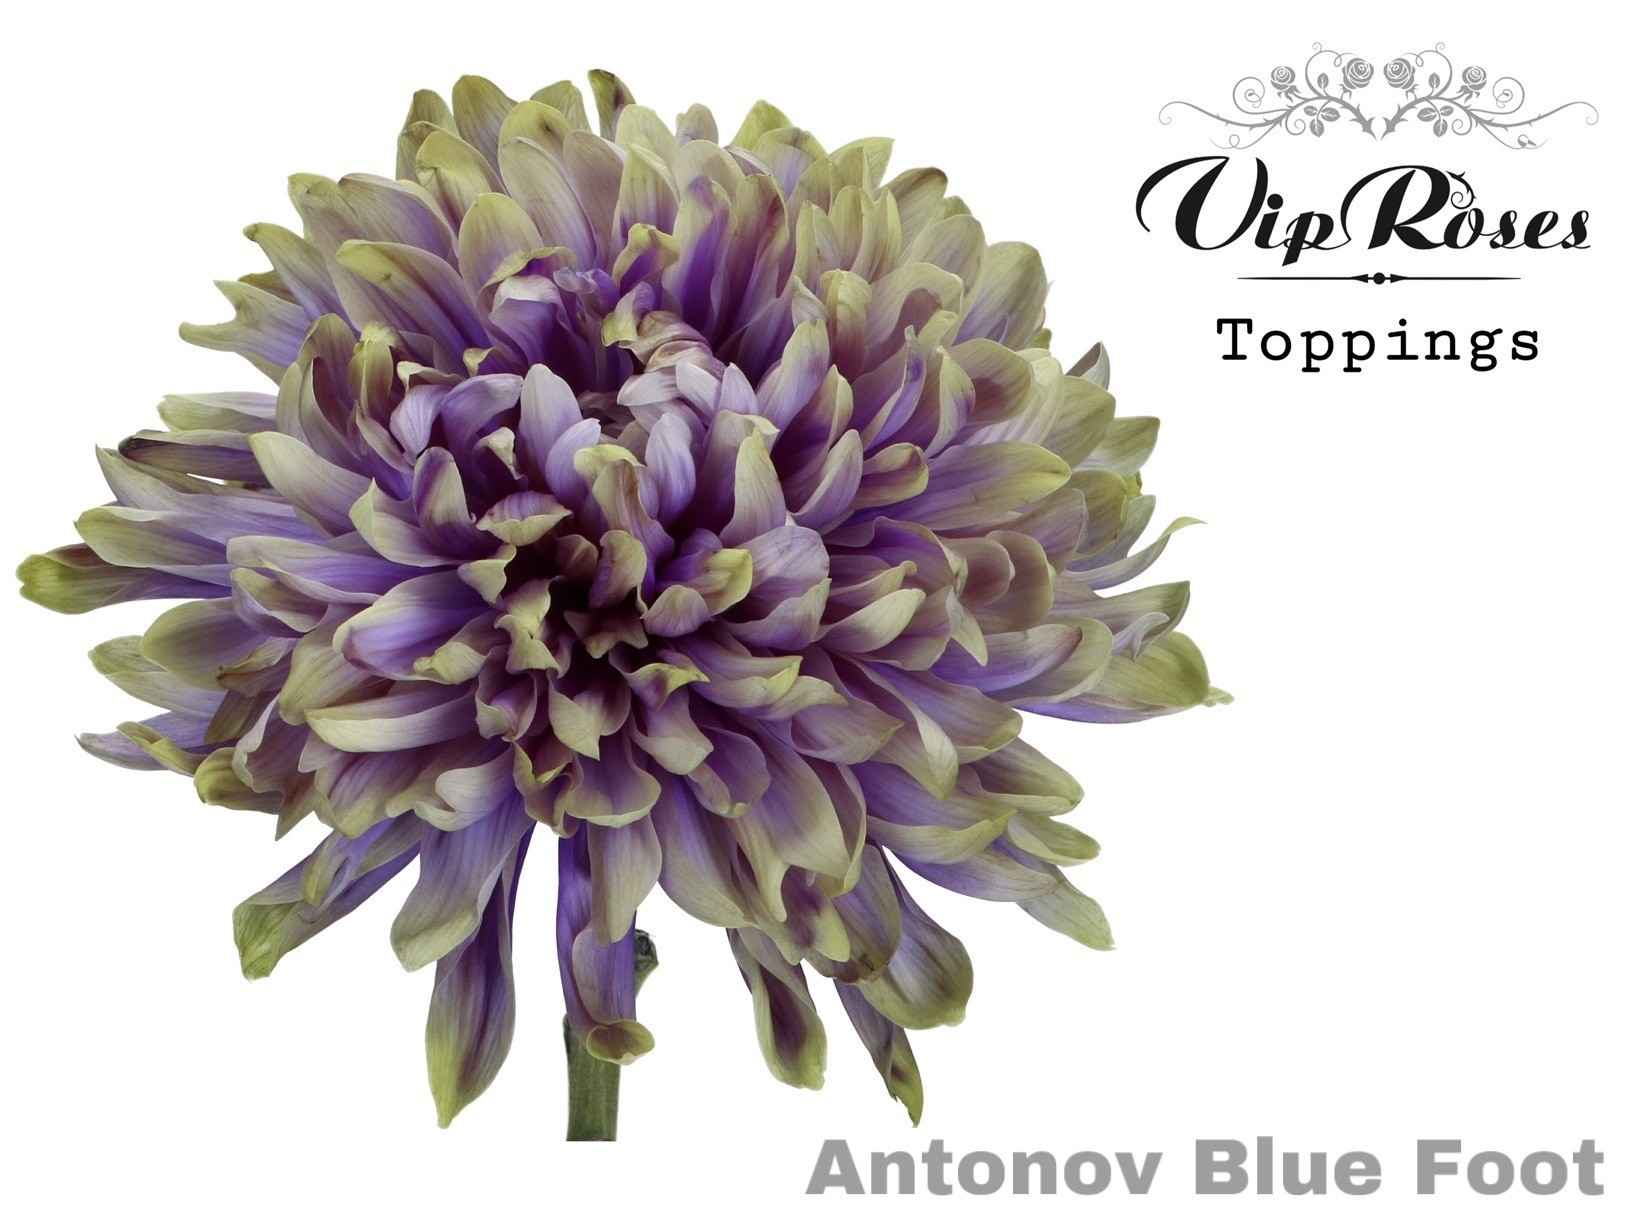 Срезанные цветы оптом Chrys bl paint antonov blue foot от 20шт из Голландии с доставкой по России